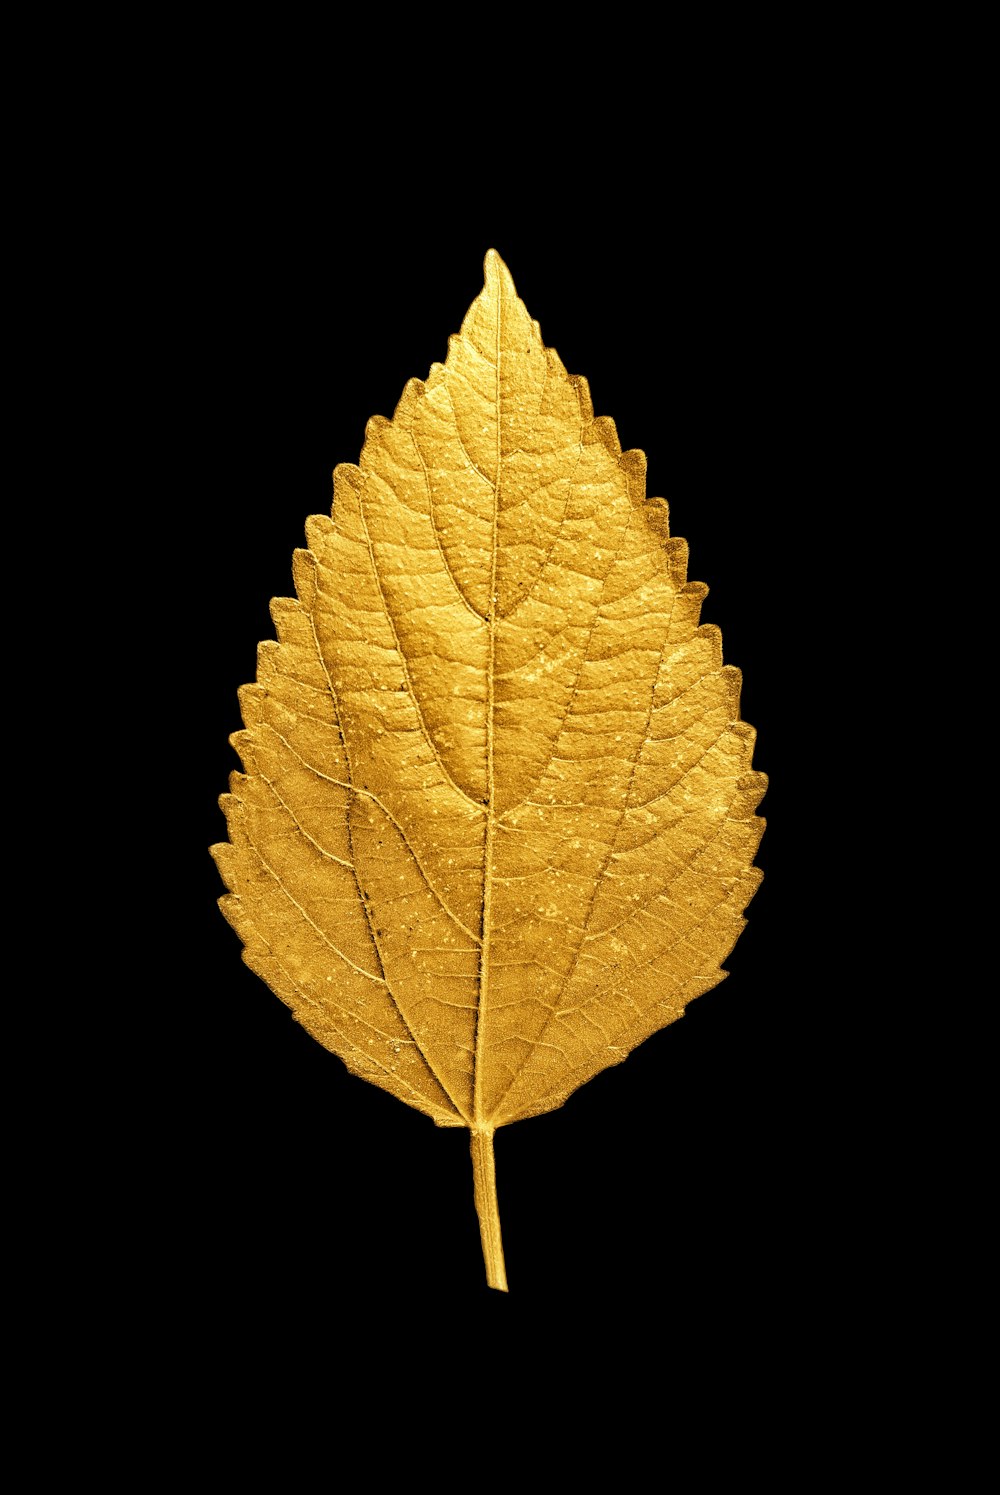 30k+ Gold Leaf Pictures  Download Free Images on Unsplash